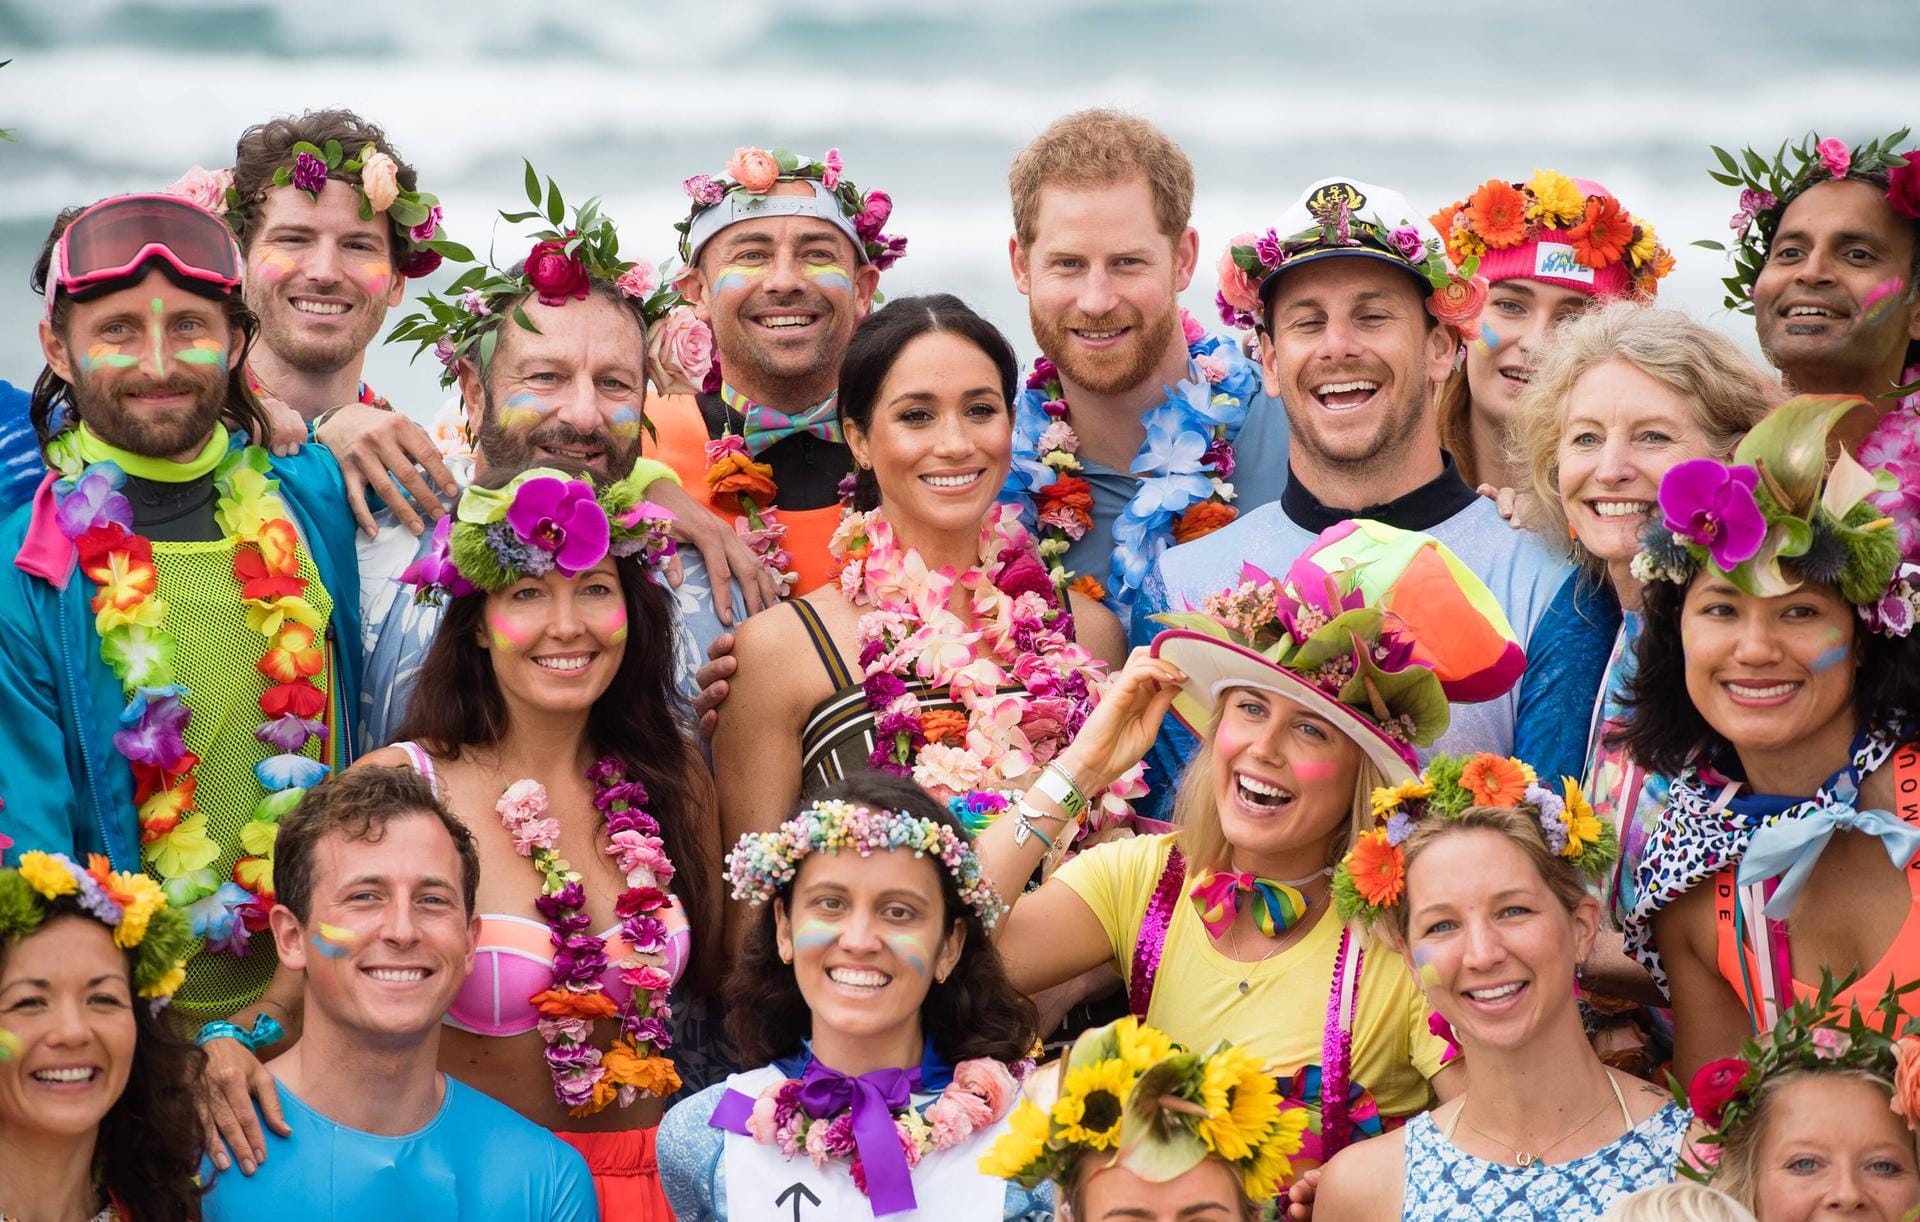 Begegnung mit der Surfer-Gruppe "OneWave": Die Royals nehmen am "Fluro Friday" teil, an dem sich die Gruppe über psychische Gesundheit austauscht.